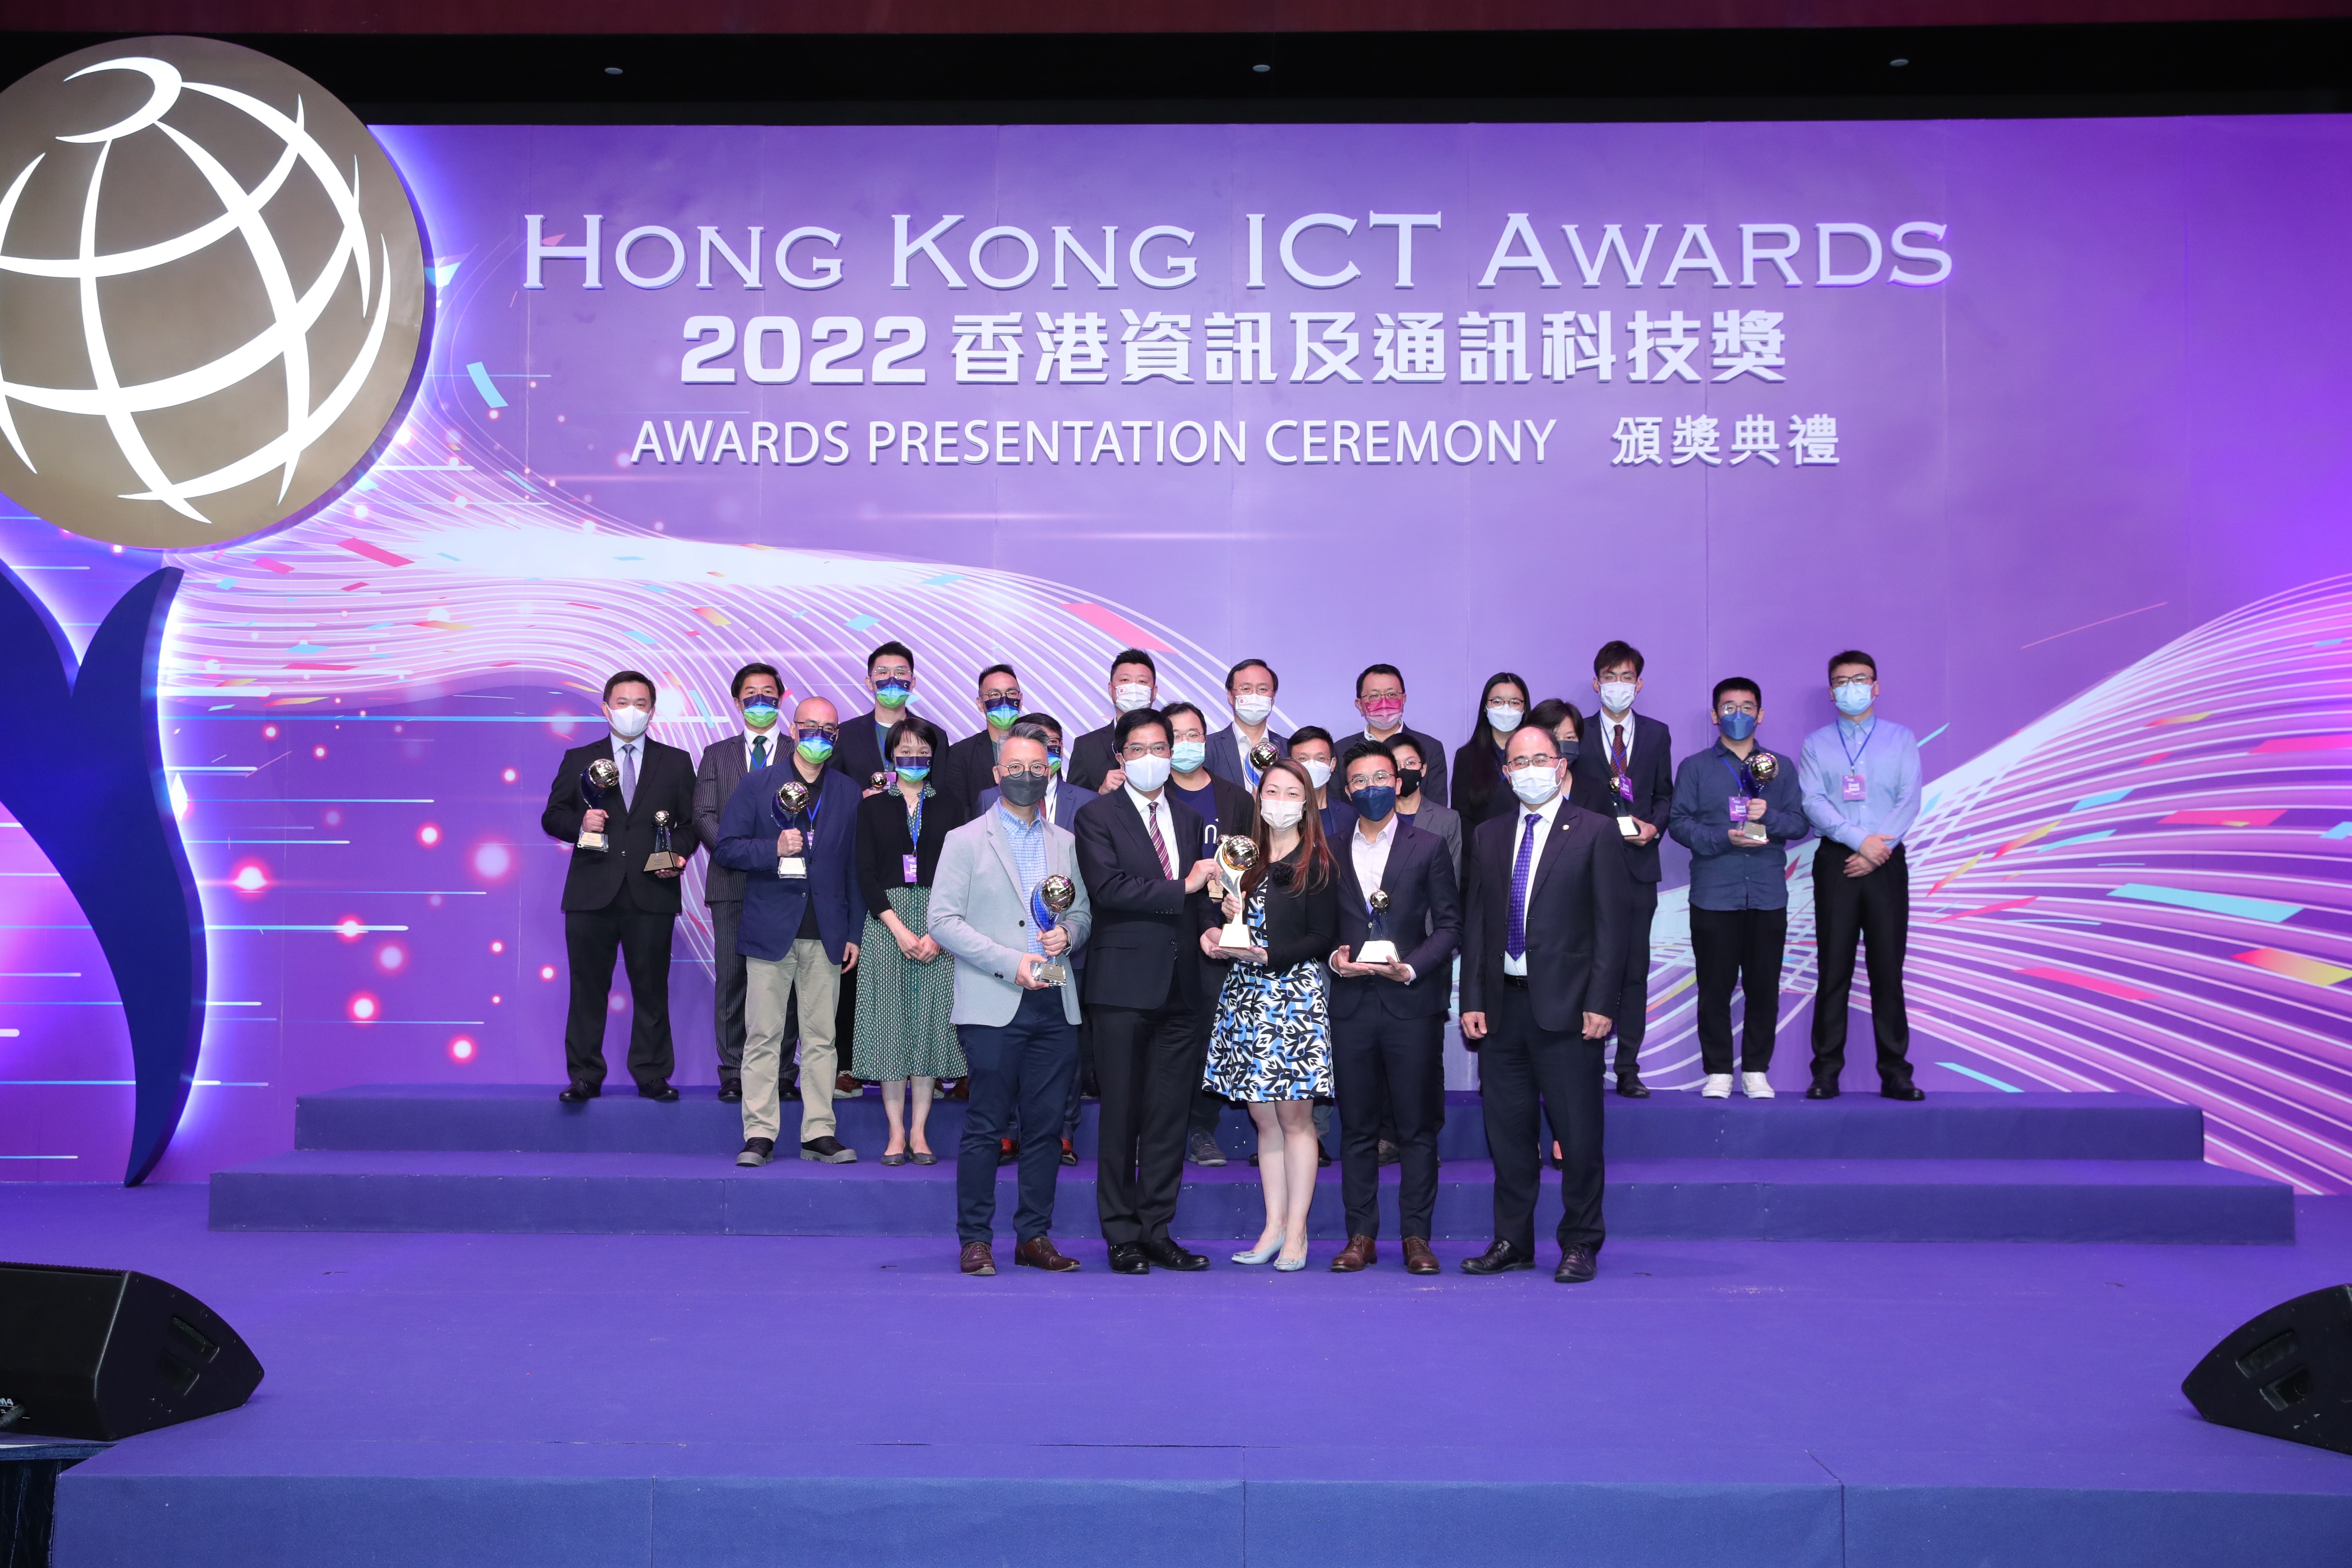 Hong Kong ICT Awards 2022 Award of the Year Winner